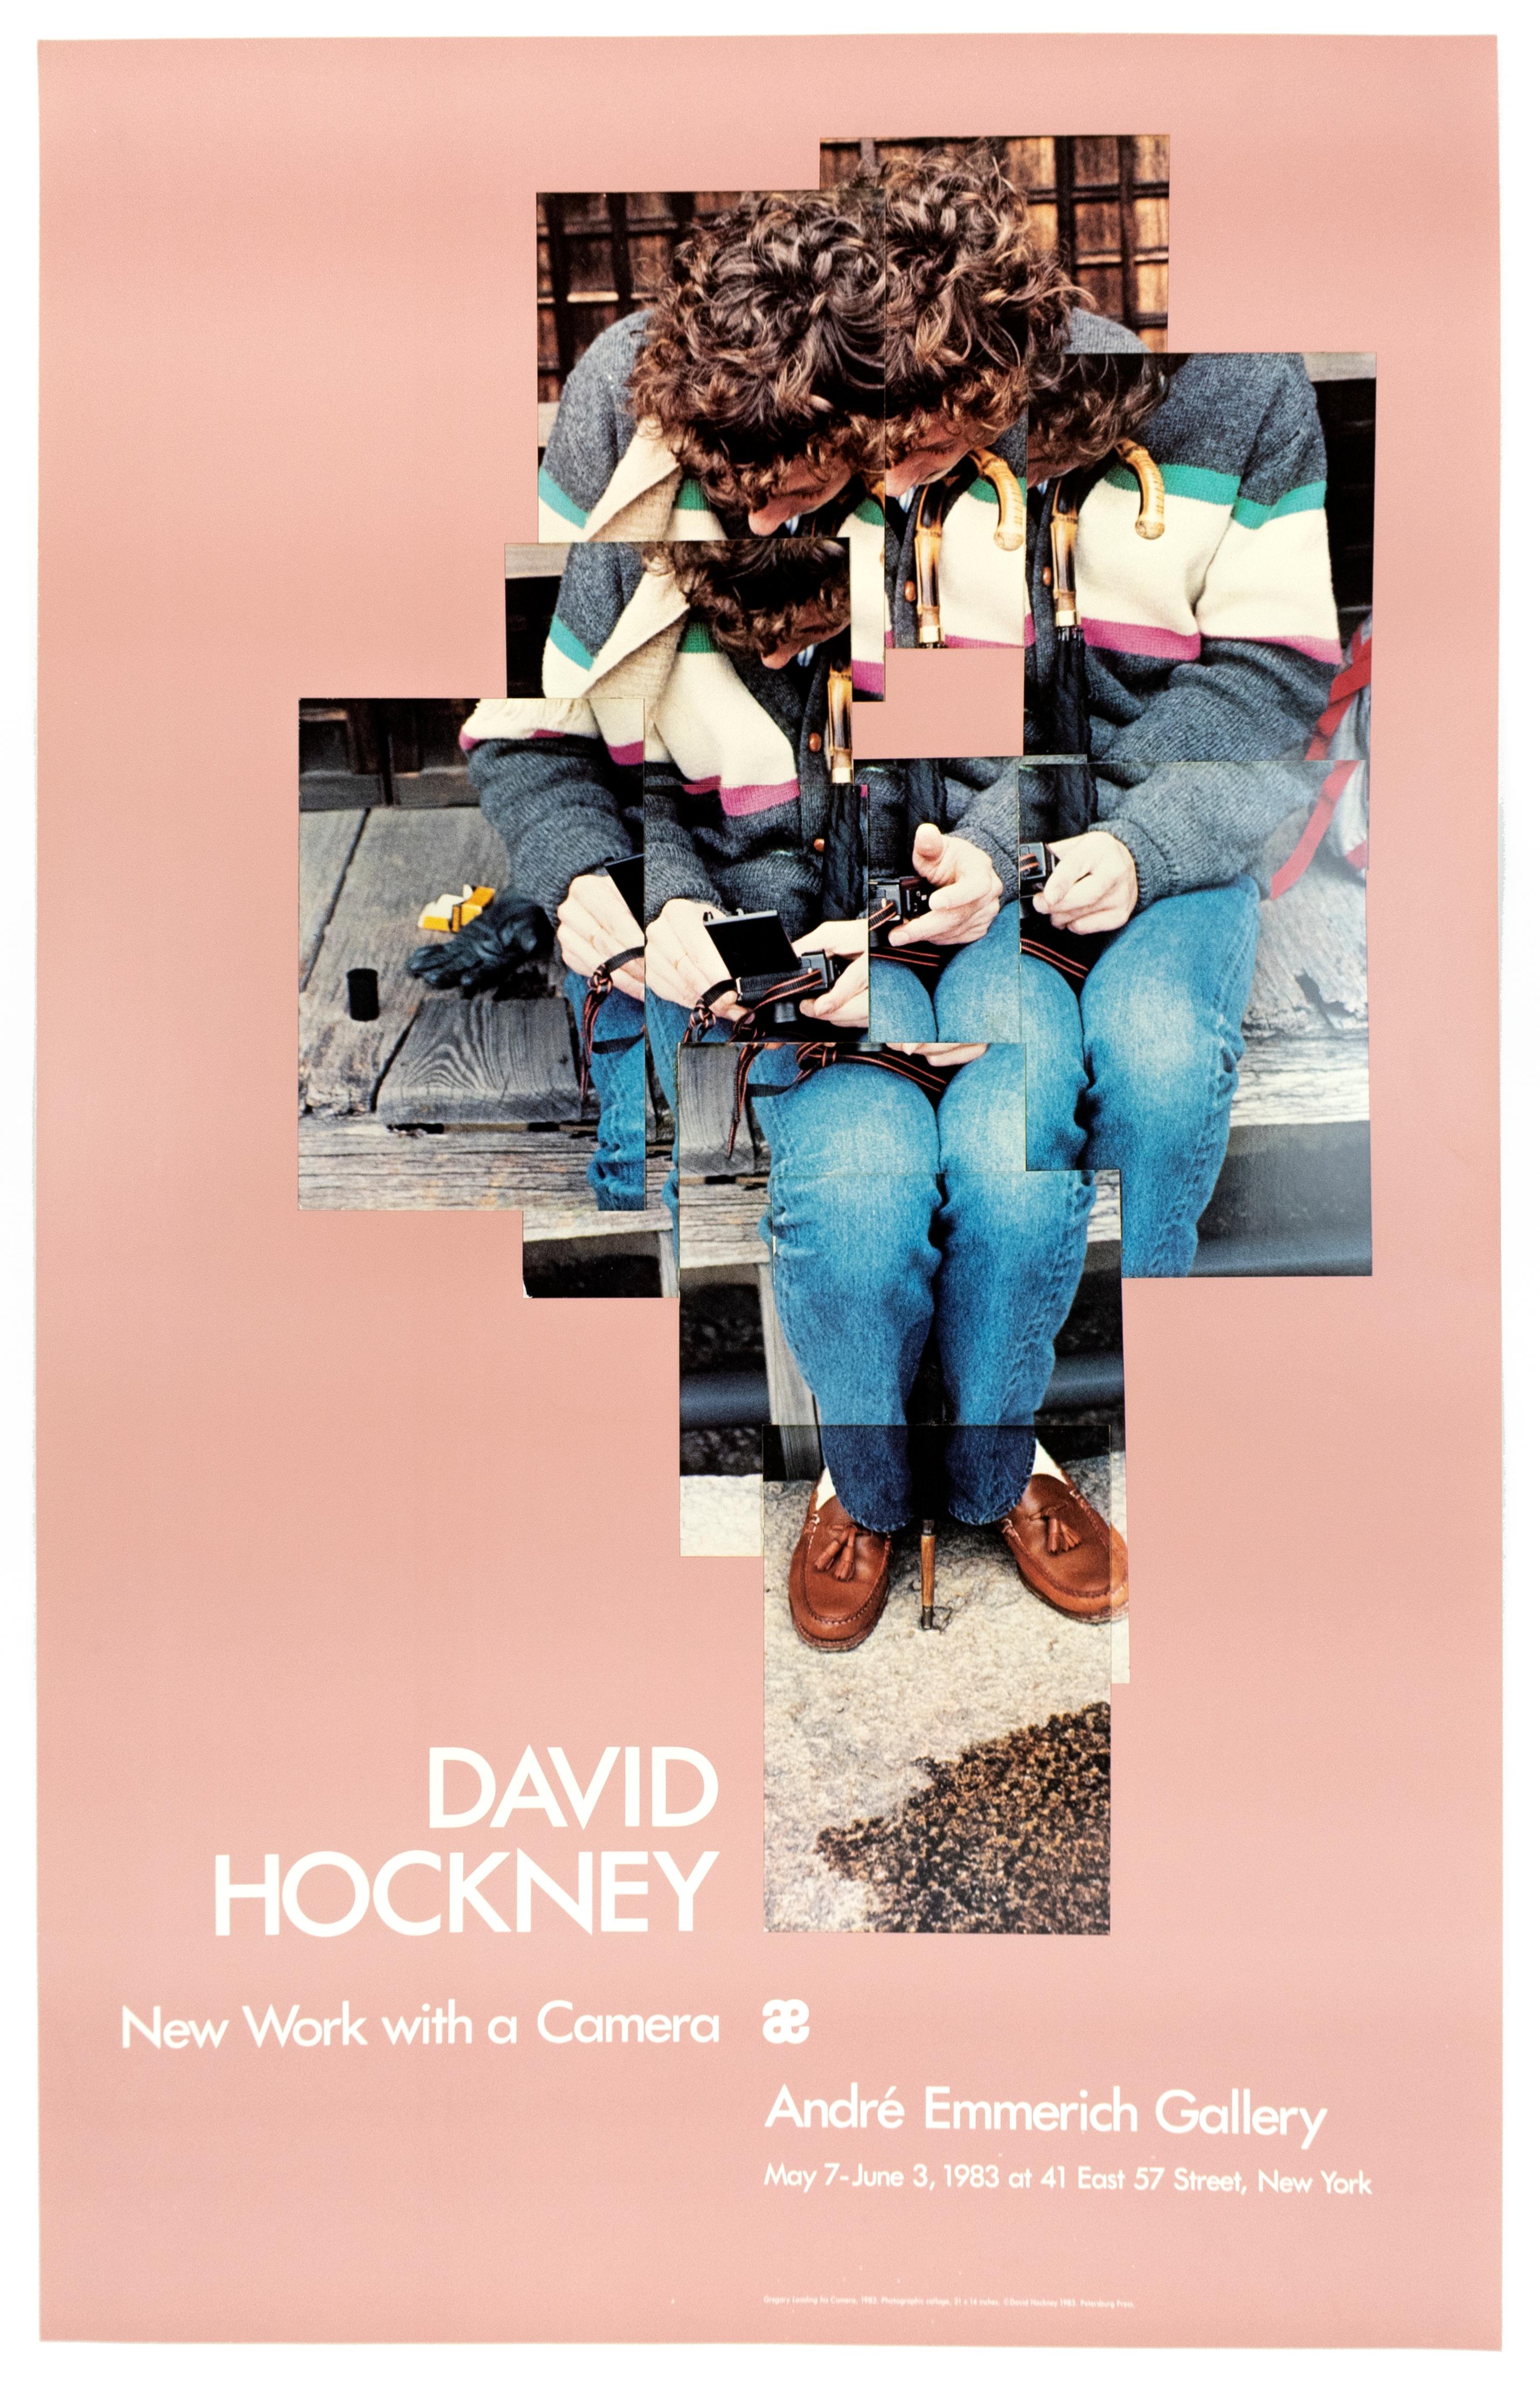 (after) David Hockney Portrait Print - Vintage David Hockney Poster Gregory Loading His Camera 1983 in millennial pink